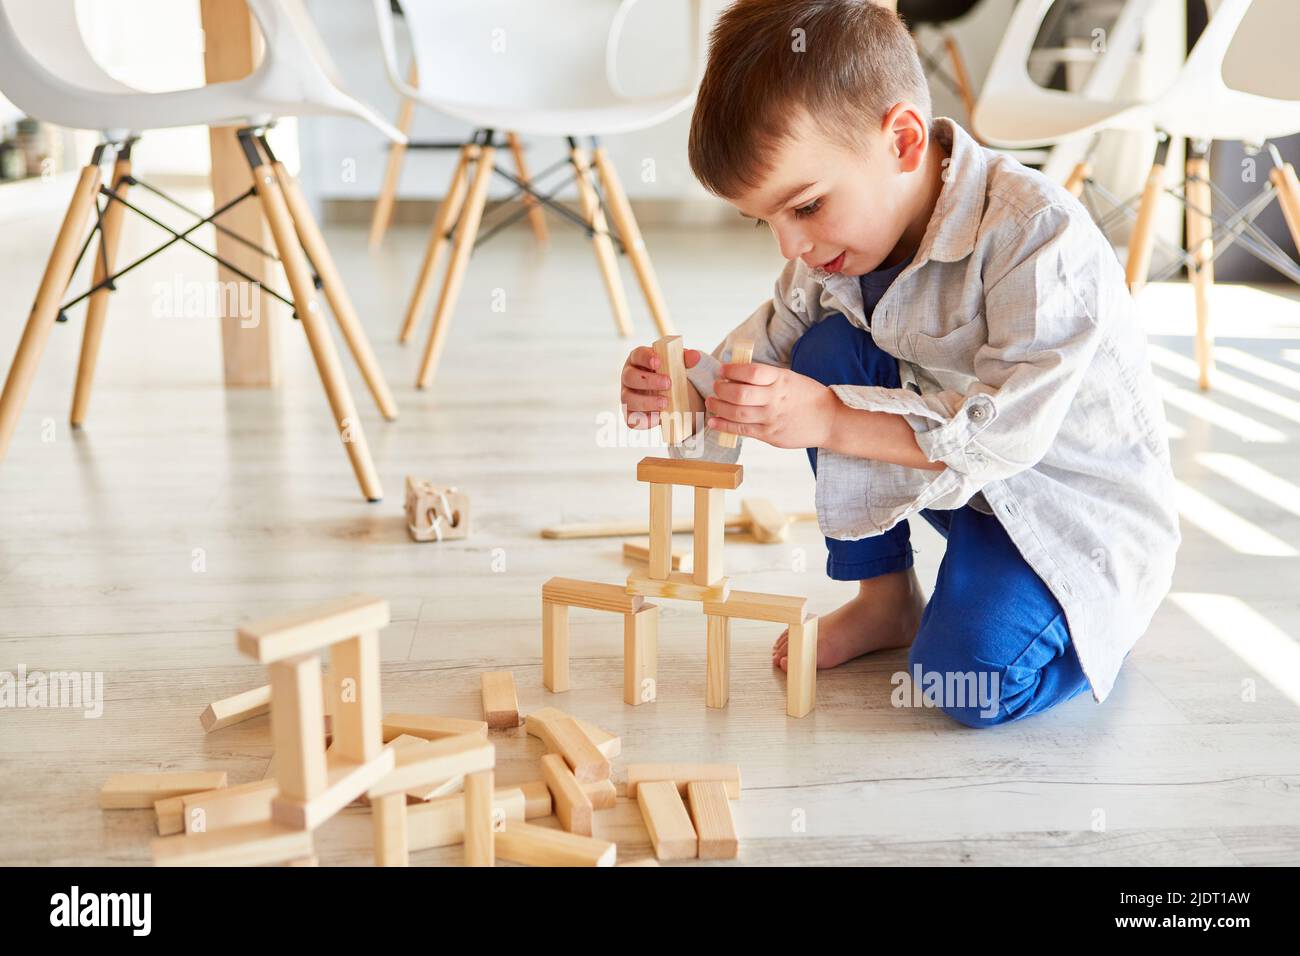 Niño pequeño construye una torre de bloques de madera para el equilibrio y el desarrollo de habilidades motoras Foto de stock